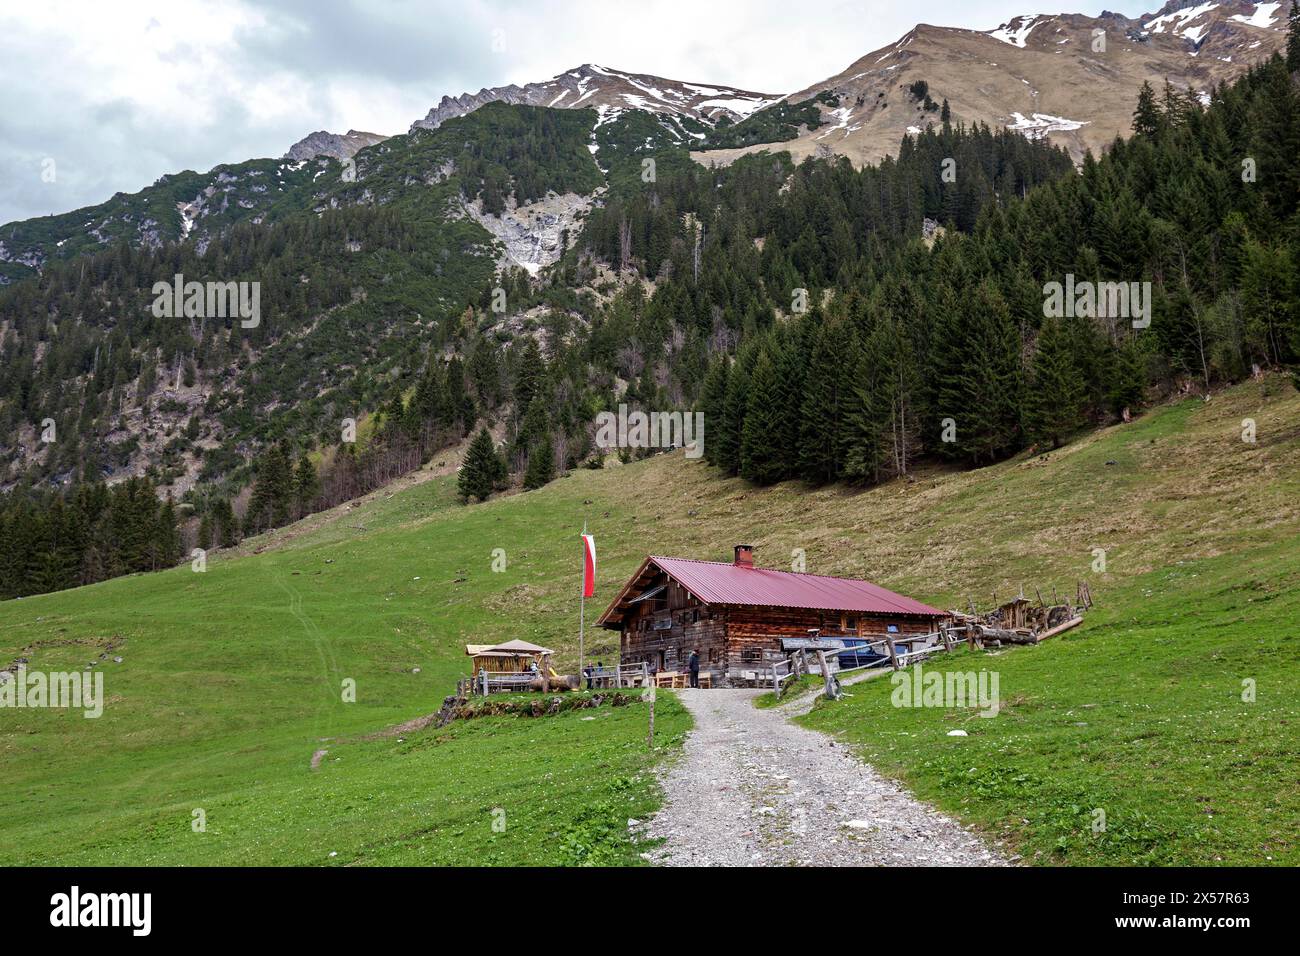 Naturalpe Gemstel-Schoenesboden-Alpe, Gemsteltal, Mittelberg, Kleinwalsertal, Vorarlberg, Allgaeu Alpes, Autriche Banque D'Images